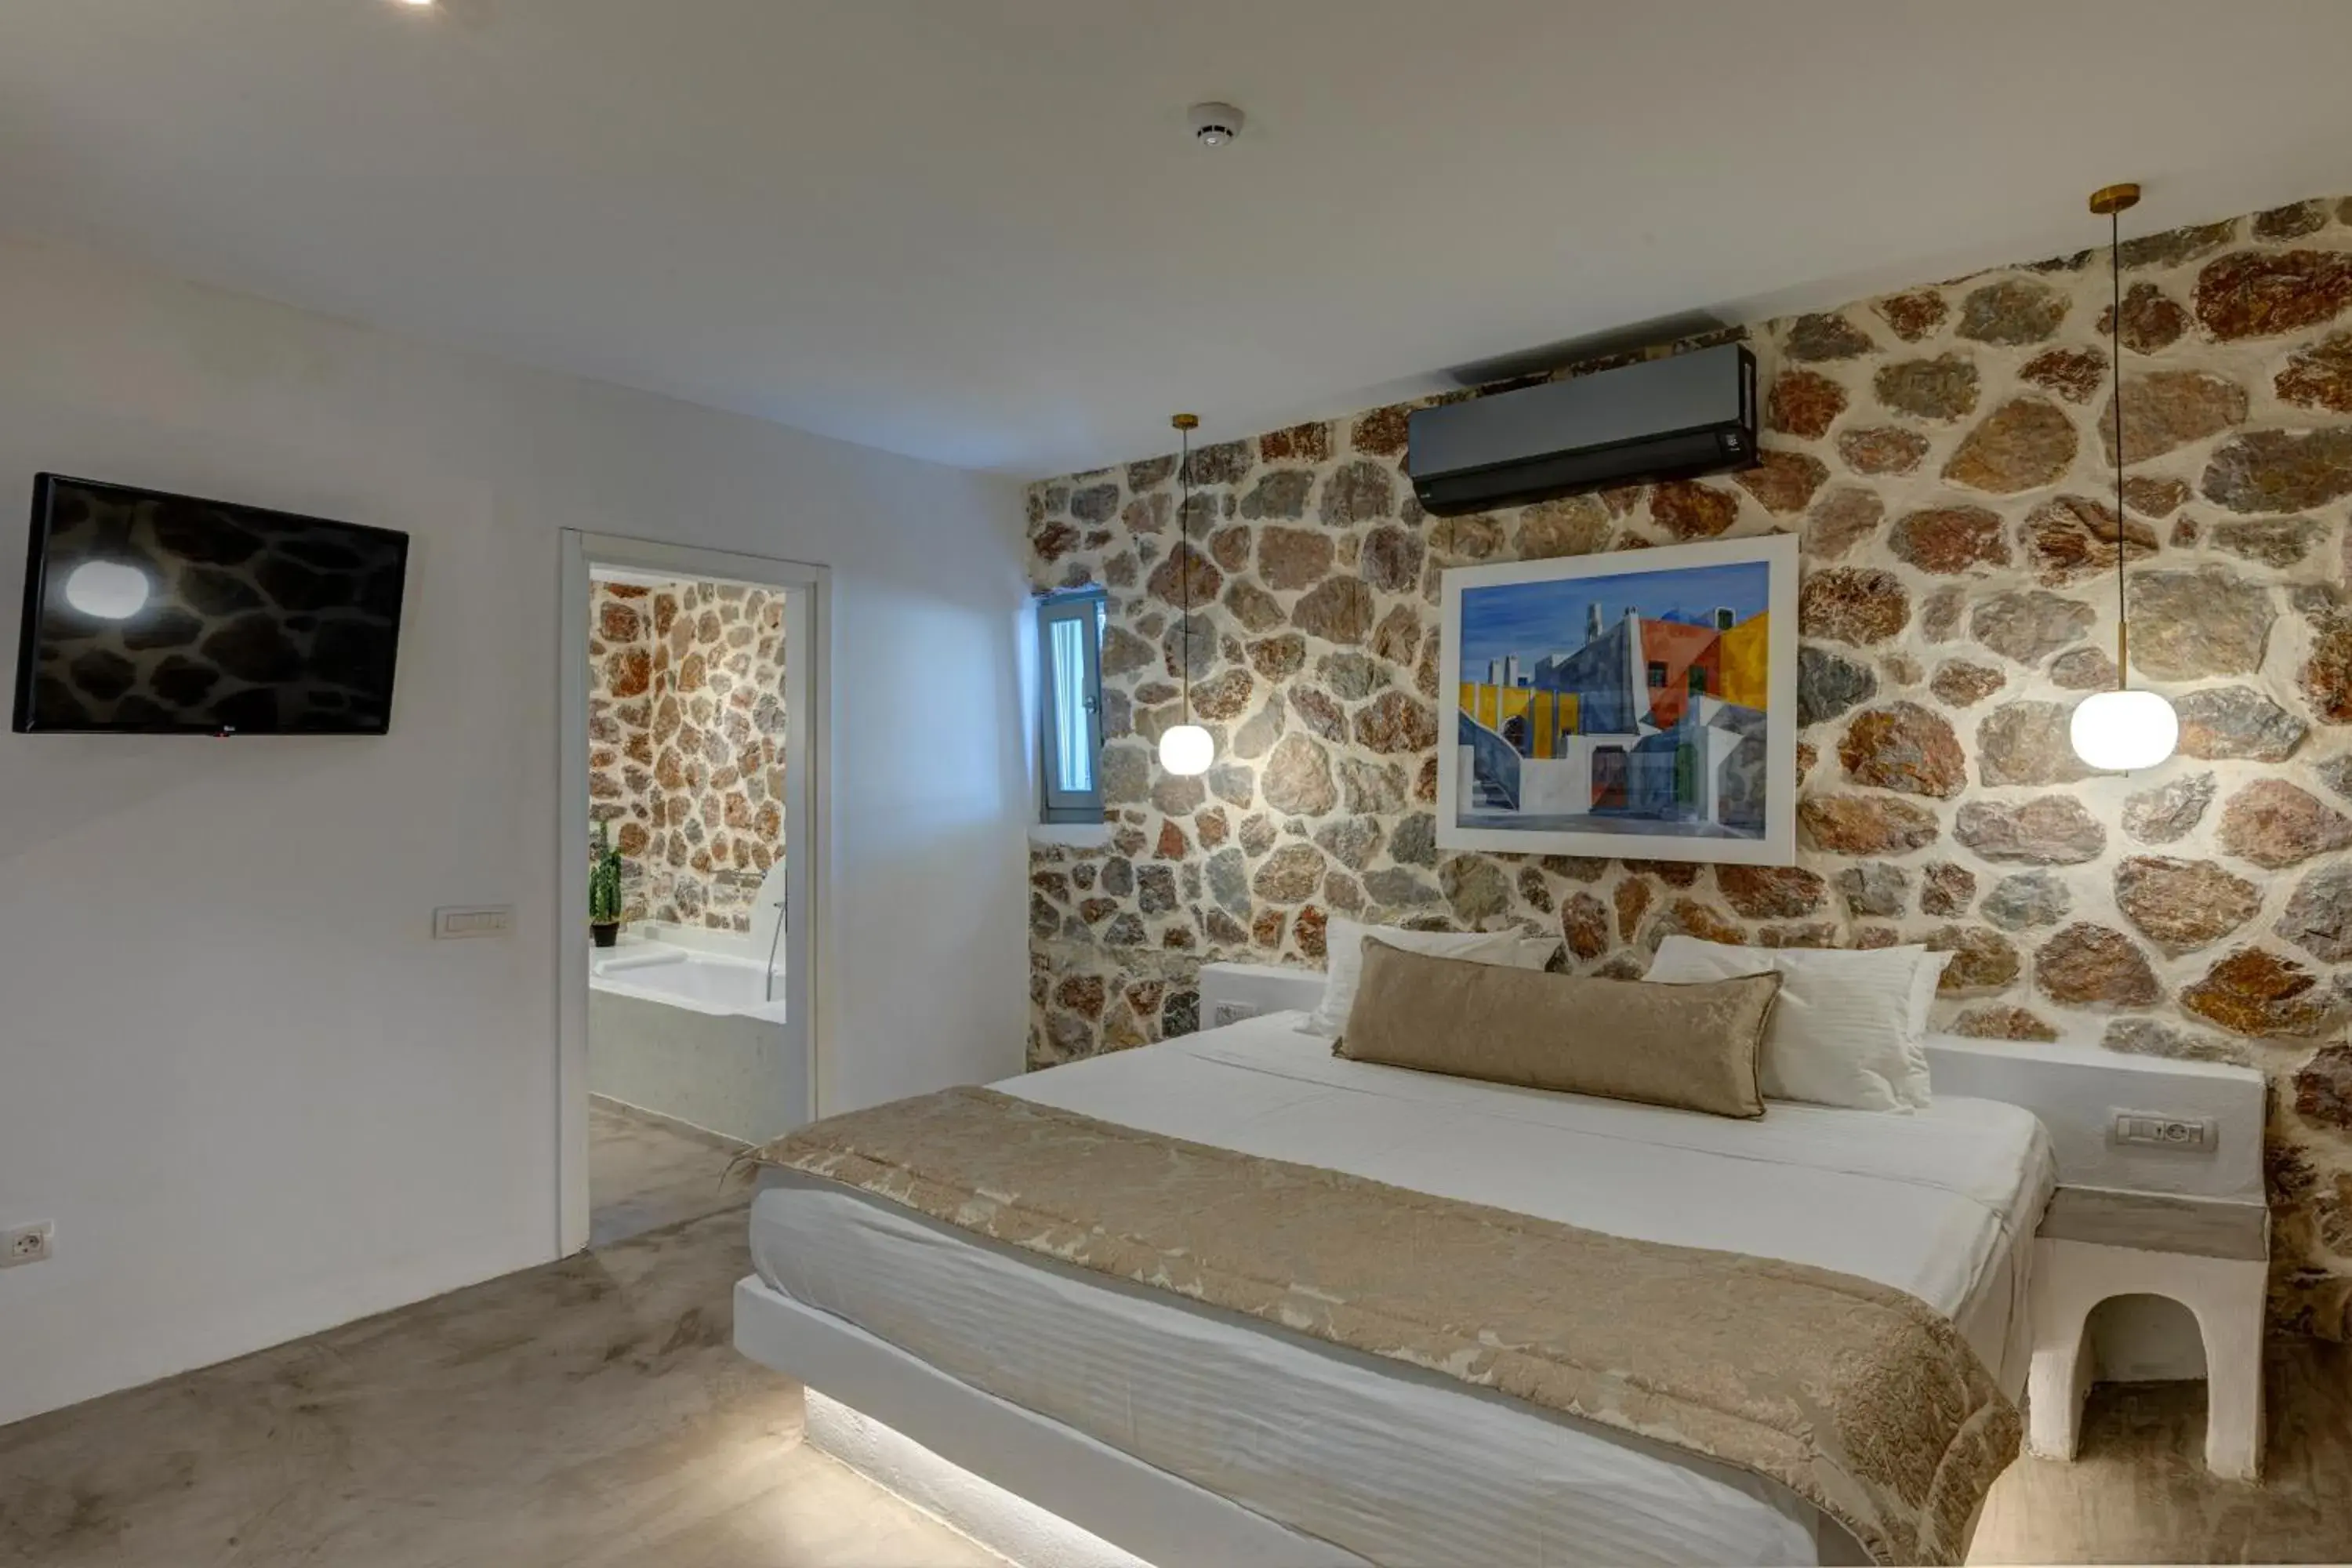 Bed in Desiterra Resort